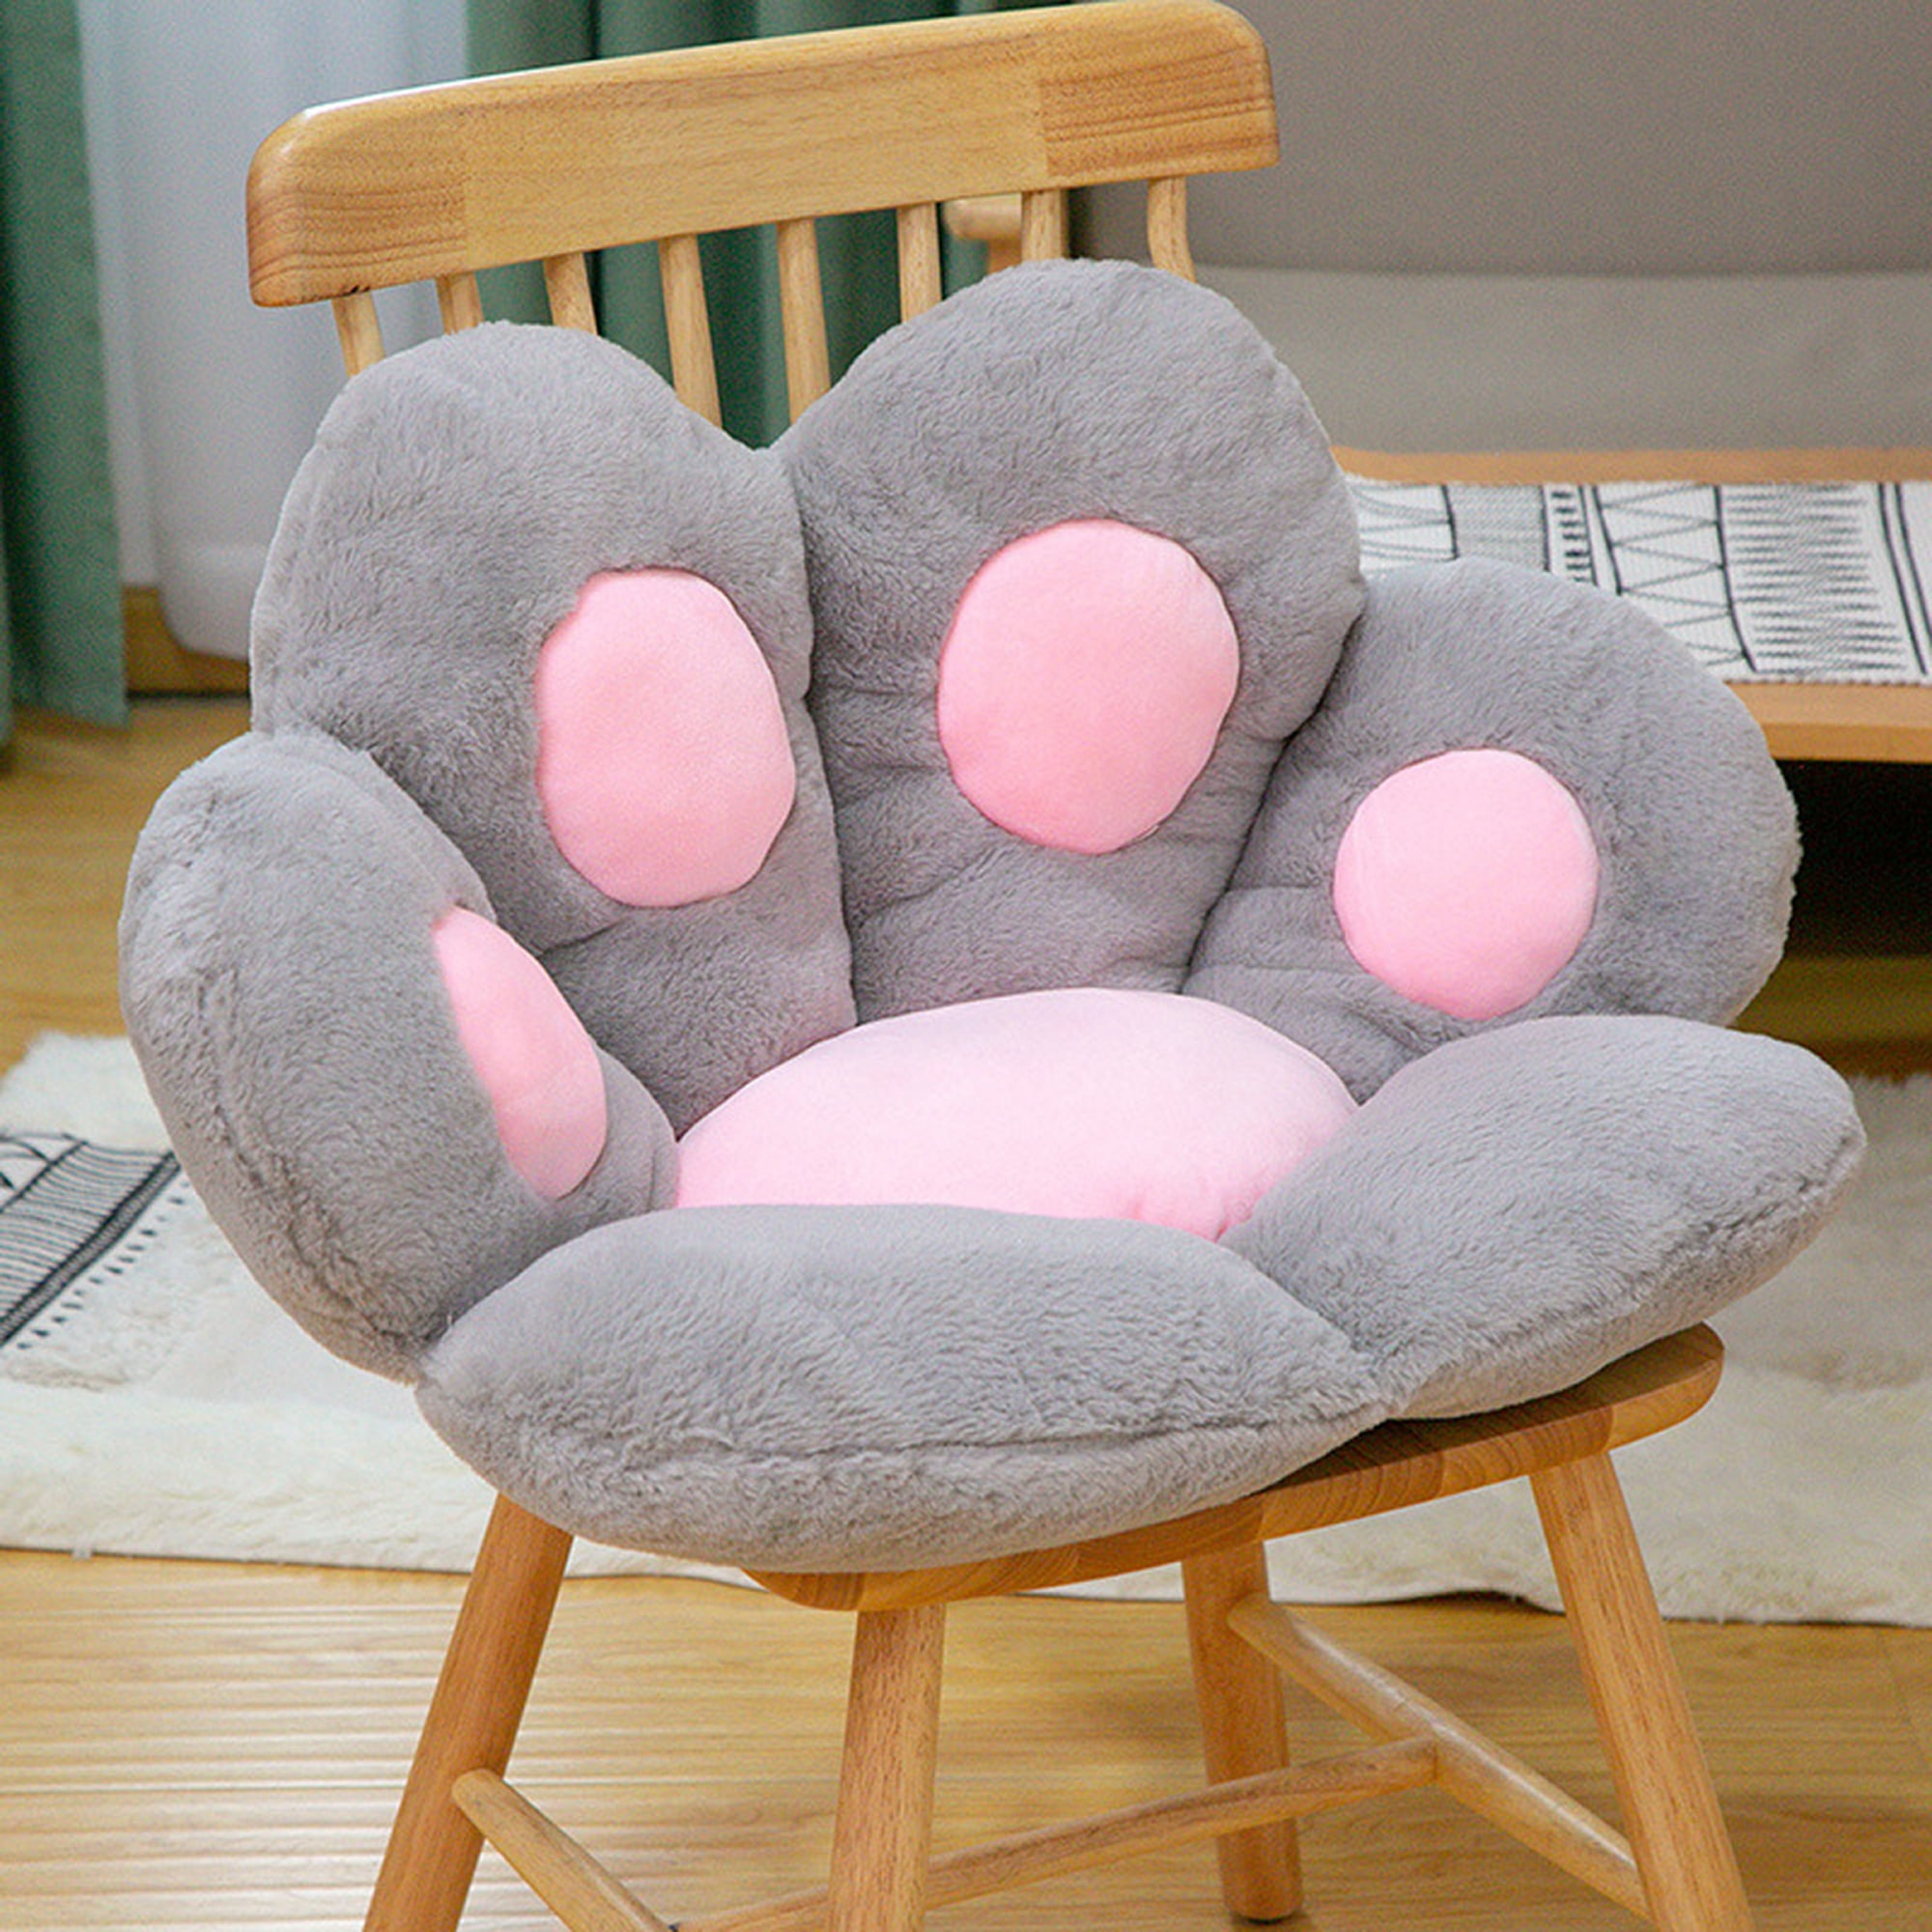 OtNiap Cute Cat Paw Plush Pillows, Soft and Comfortable Sofa Cushions/Office Chair Seat Cushion Lazy Sofa Bear Paw Chair Cushion for Chair,Home